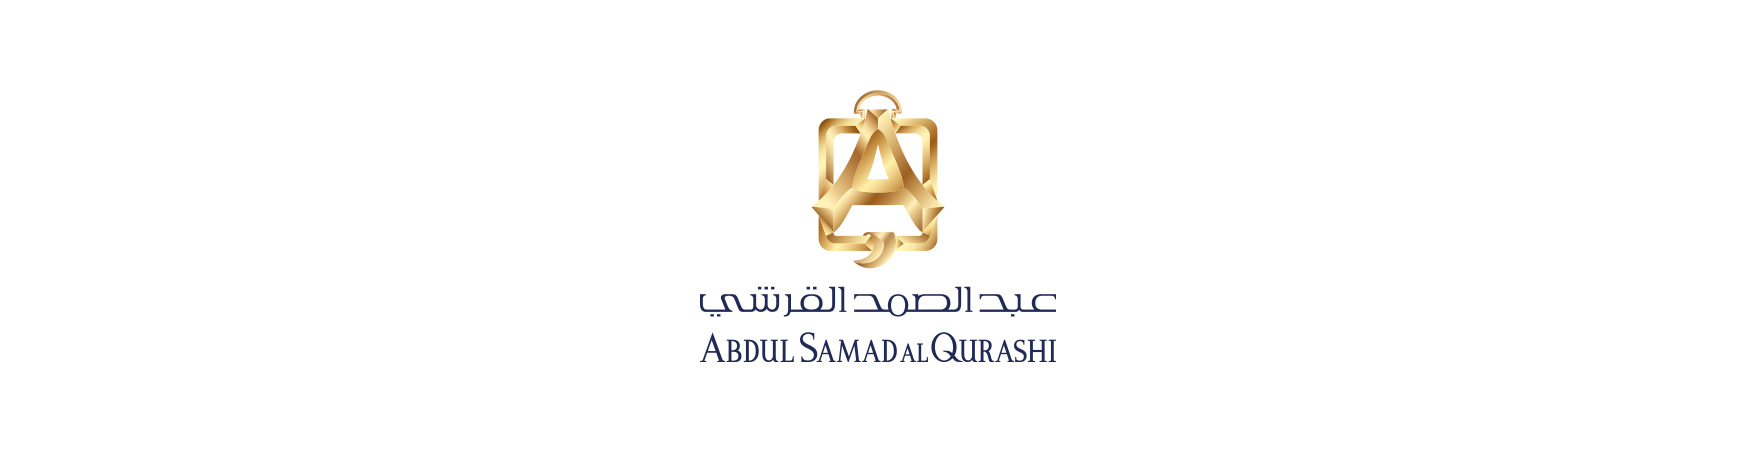 Abdul-Samad-AlQurashi-logo